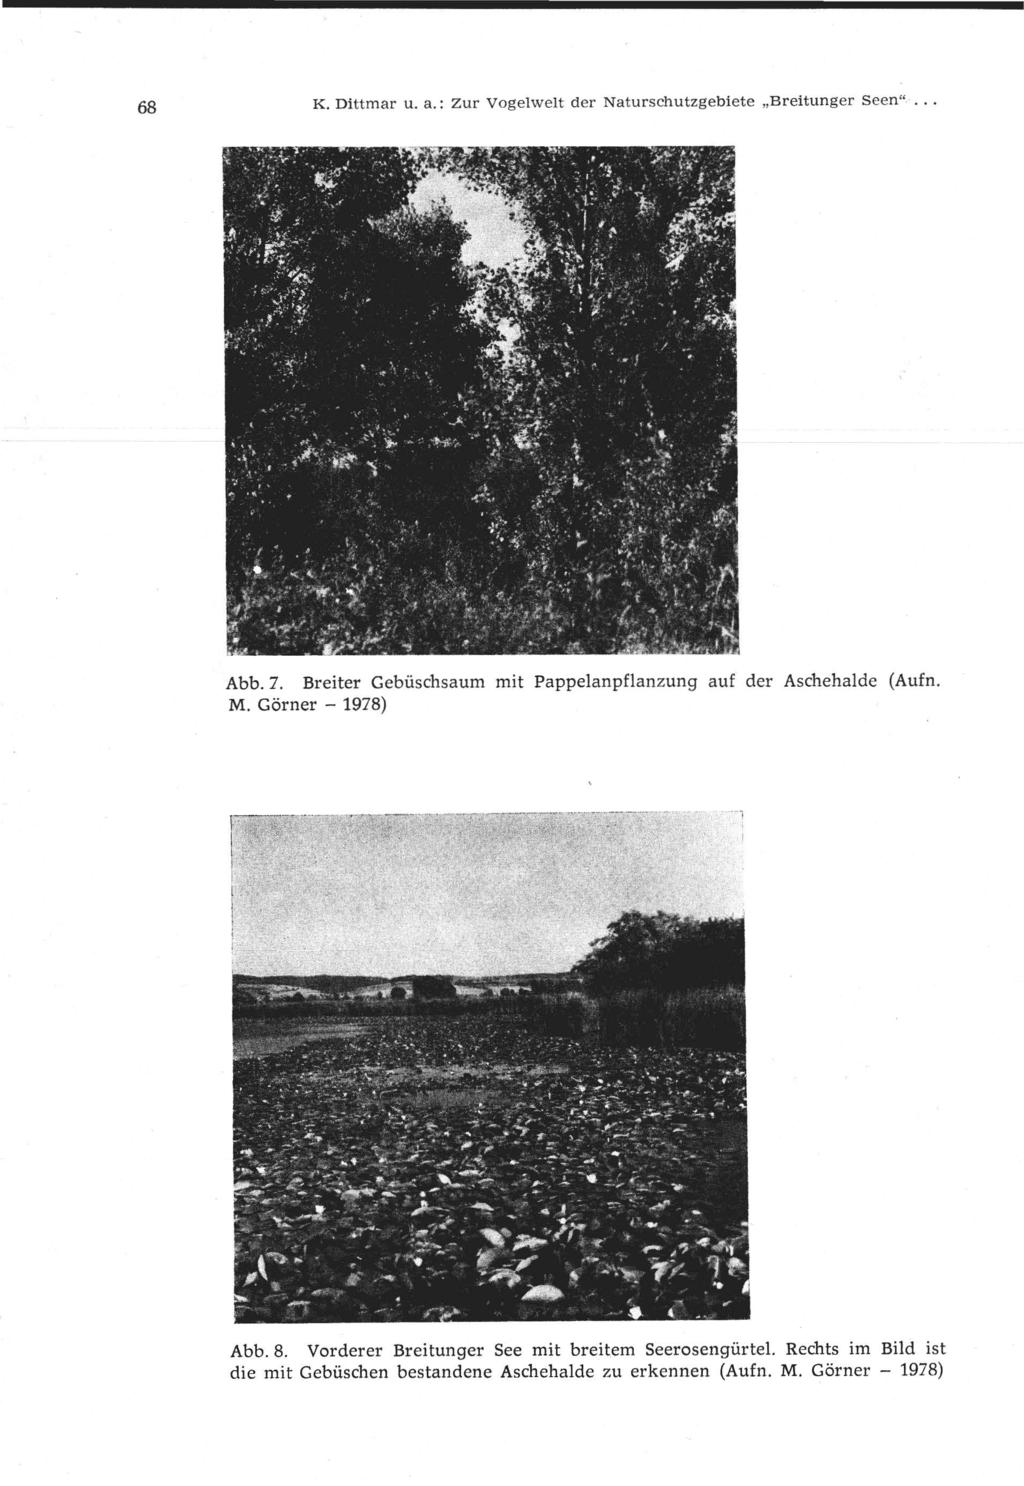 68 K. Dittmar u. a.: Zur Vogelwelt der Naturschutzgebiete "Breitunger Seen"... Abb. 7. Breiter Gebüschsaum mit Pappelanpflanzung auf der Aschehalde (Aufn. M.